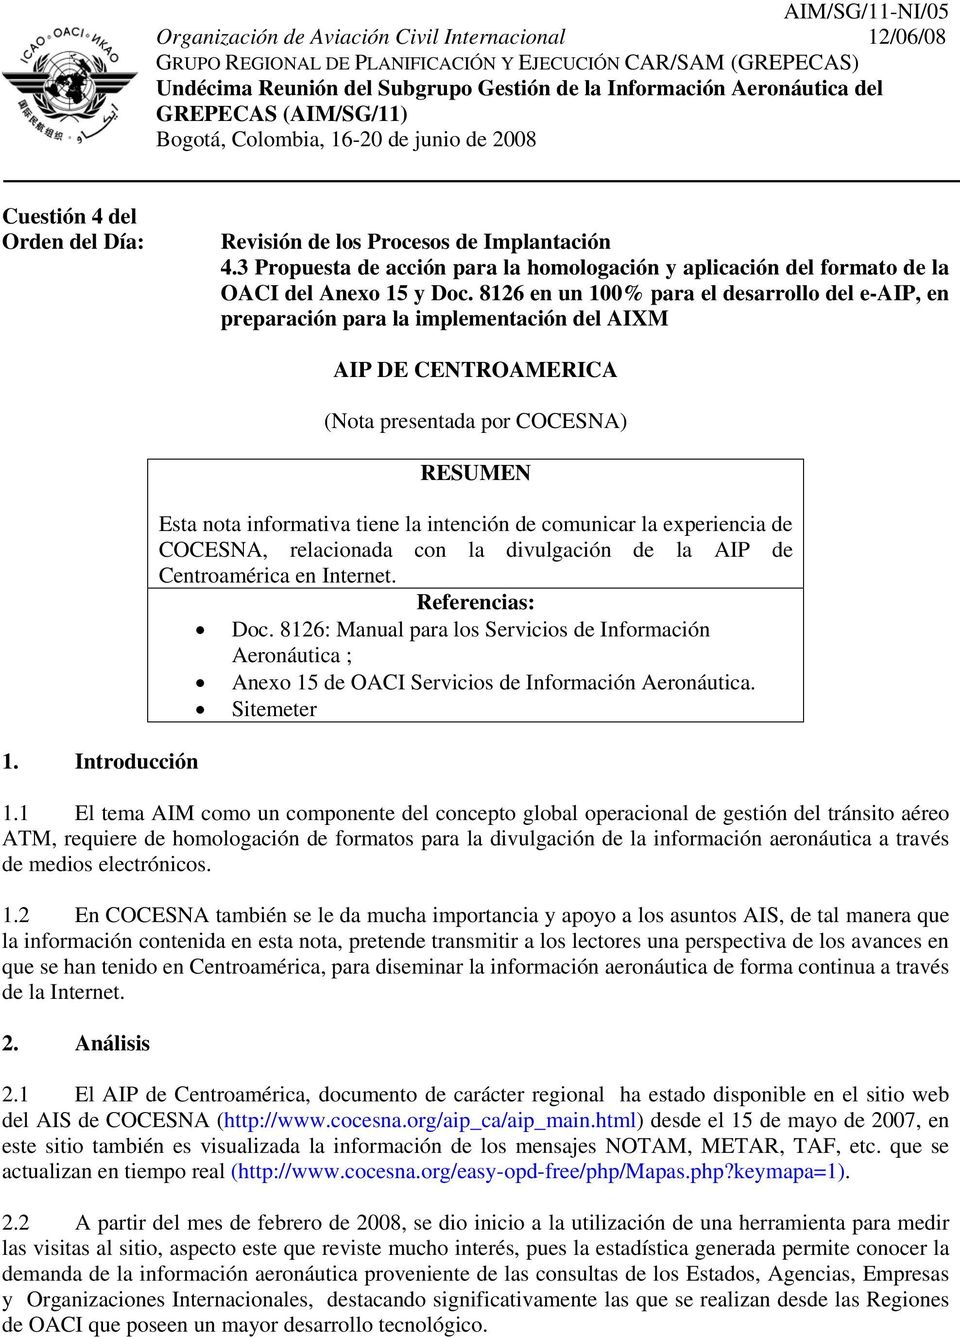 3 Propuesta de acción para la homologación y aplicación del formato de la OACI del Anexo 15 y Doc. 8126 en un 100% para el desarrollo del e-aip, en preparación para la implementación del AIXM 1.